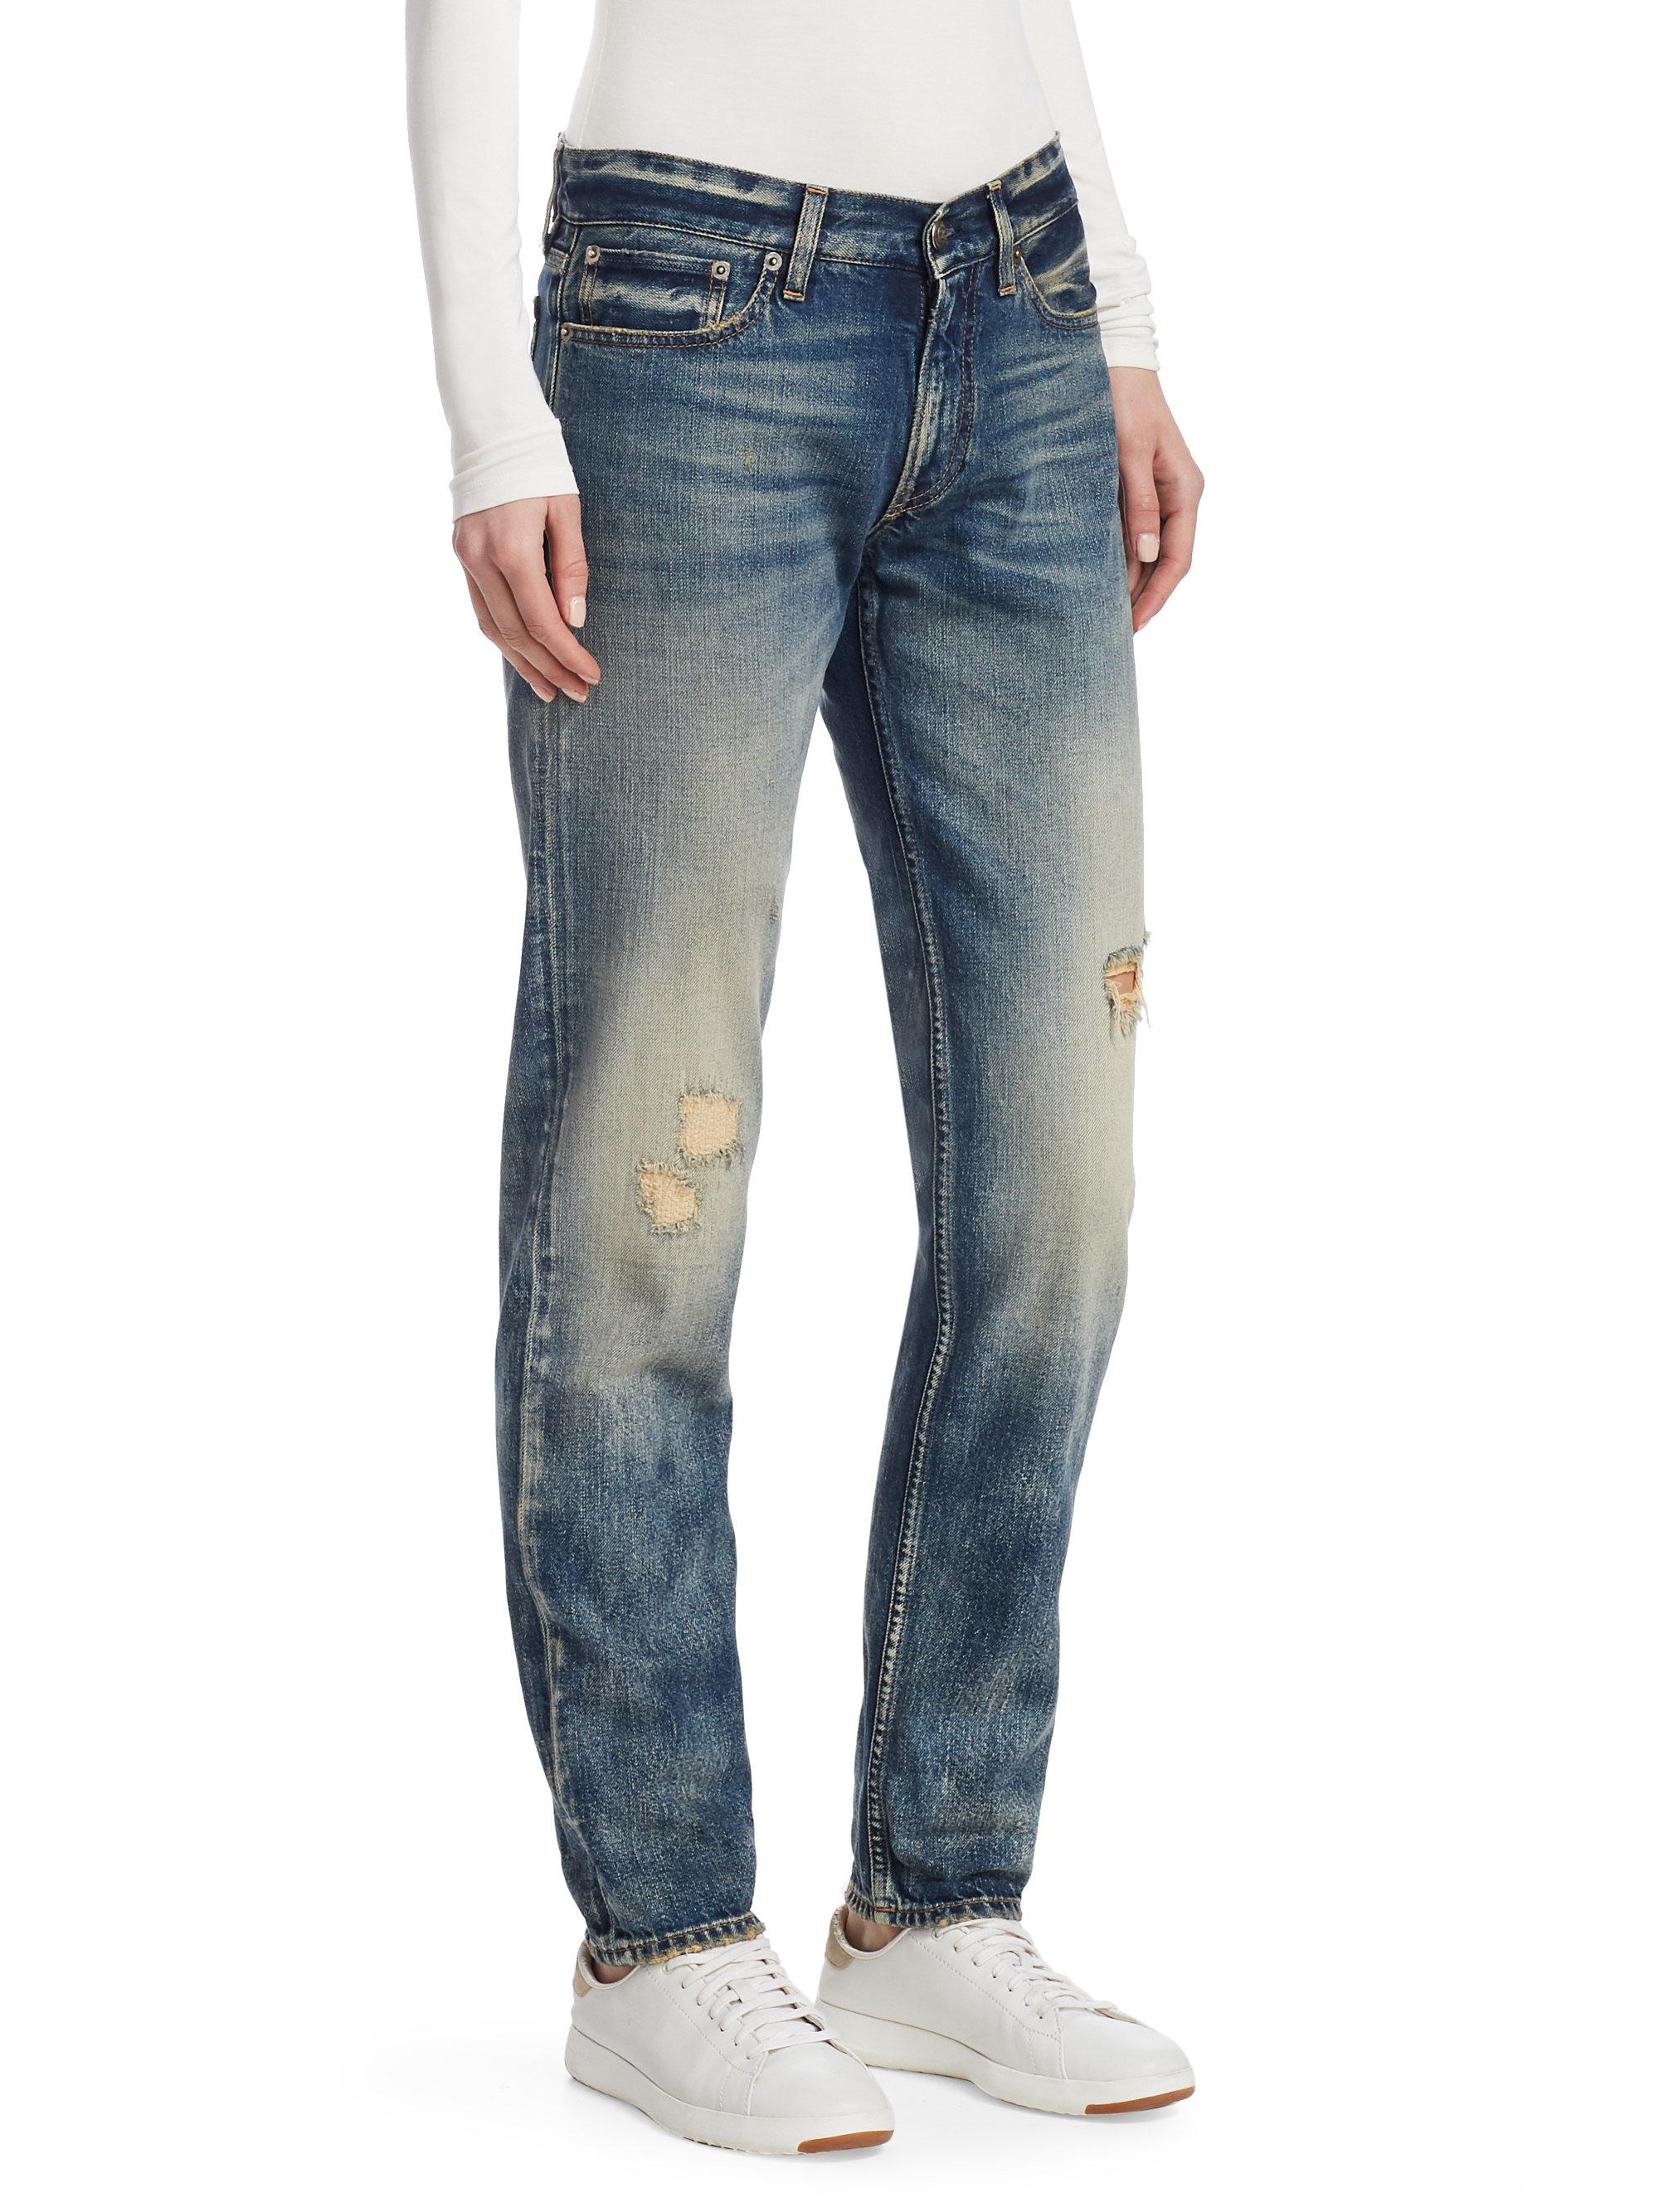 Ralph Lauren Collection Denim Iconic Style 320 Distressed Boyfriend Jeans  in Indigo (Blue) - Lyst